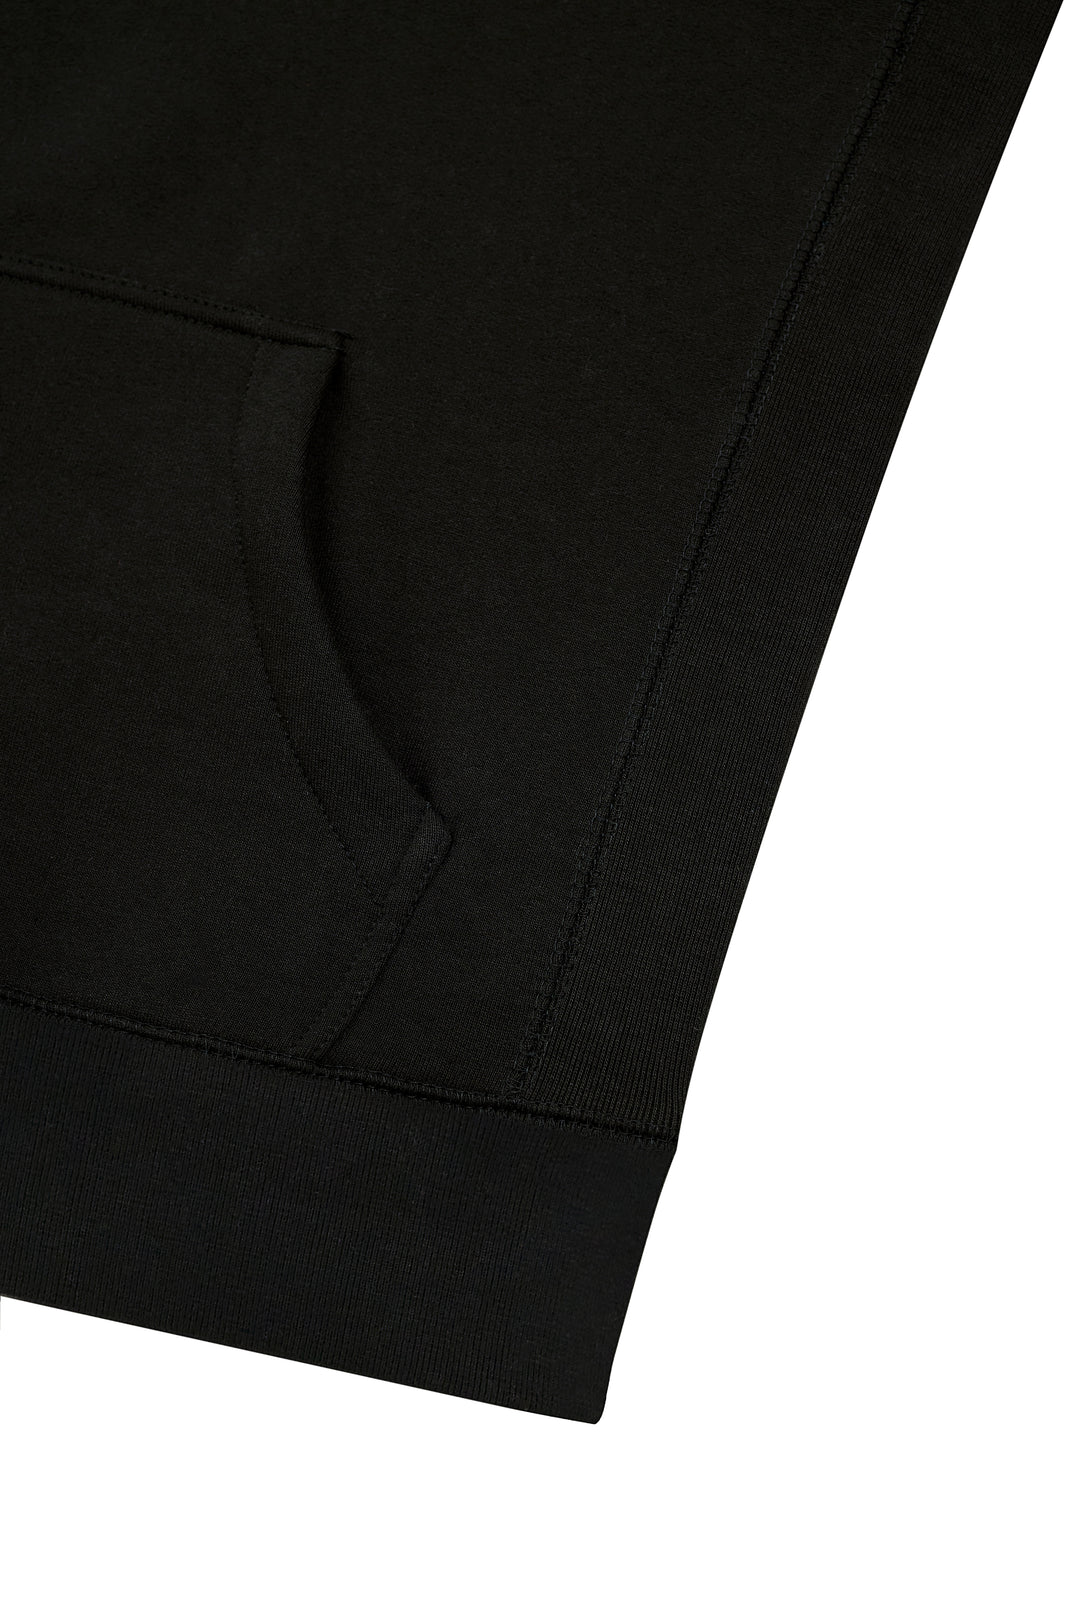 Detail of Renowned Wear 3D Motif Logo Premium Heavyweight Pre-Shrunk Hoodie in Black